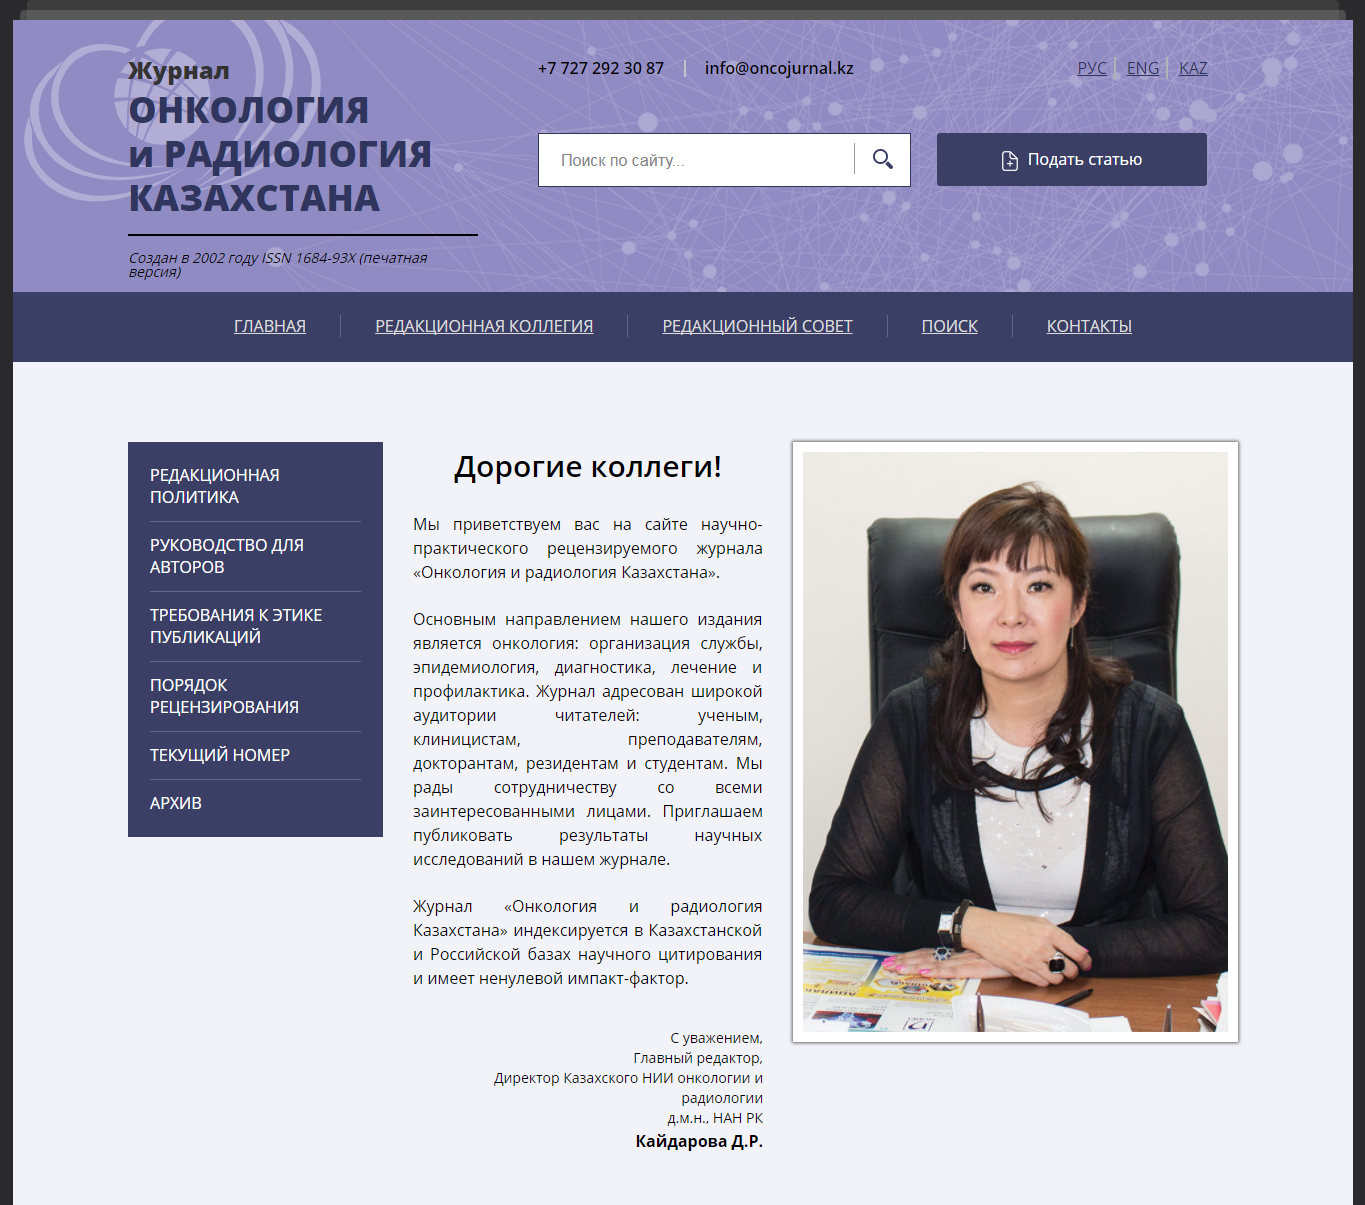 Приглашаем вас публиковаться в журнале “Онкология и радиология Казахстана”.